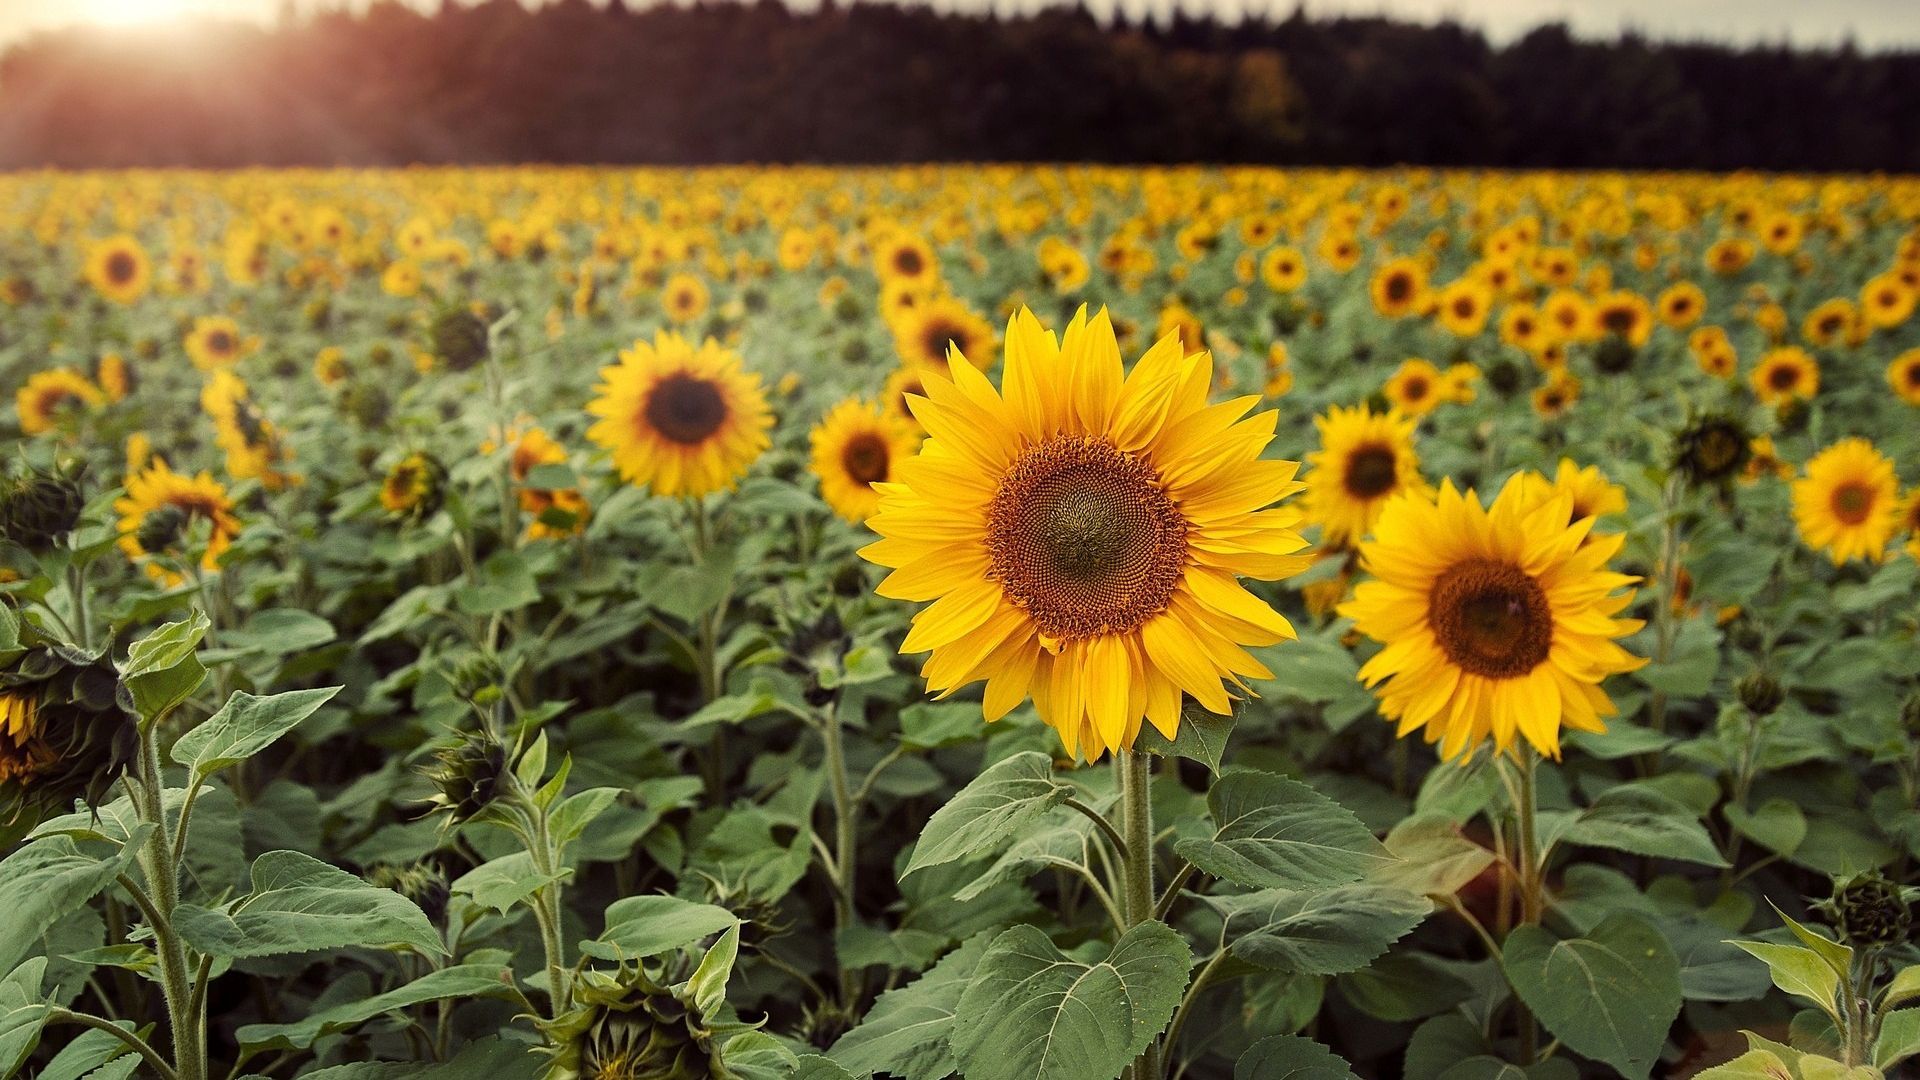 Sunflowers Field in Summer Season Wallpaper